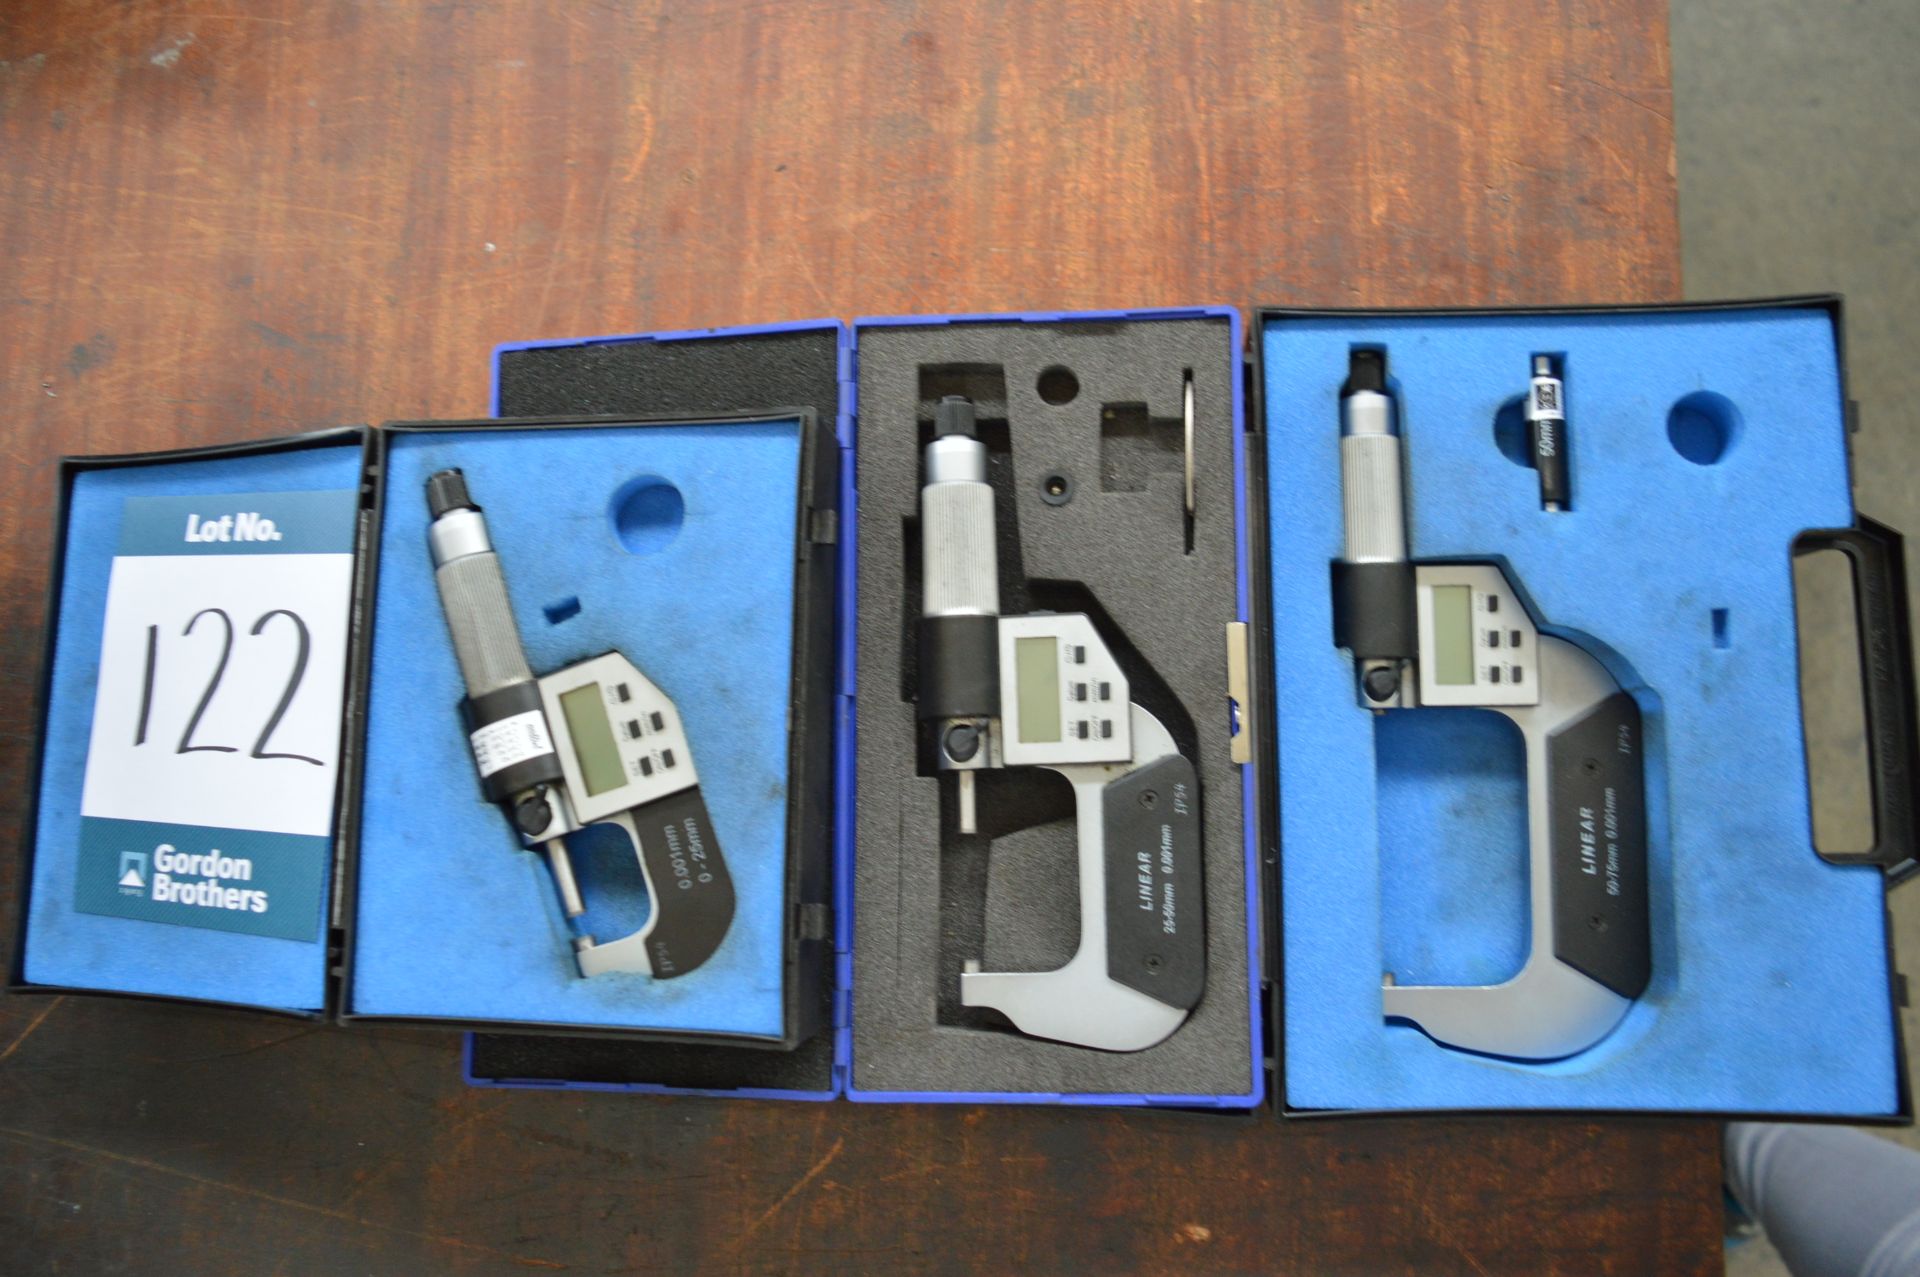 3 x Digital micrometers, 0-25mm 25-50mm 50-75mm